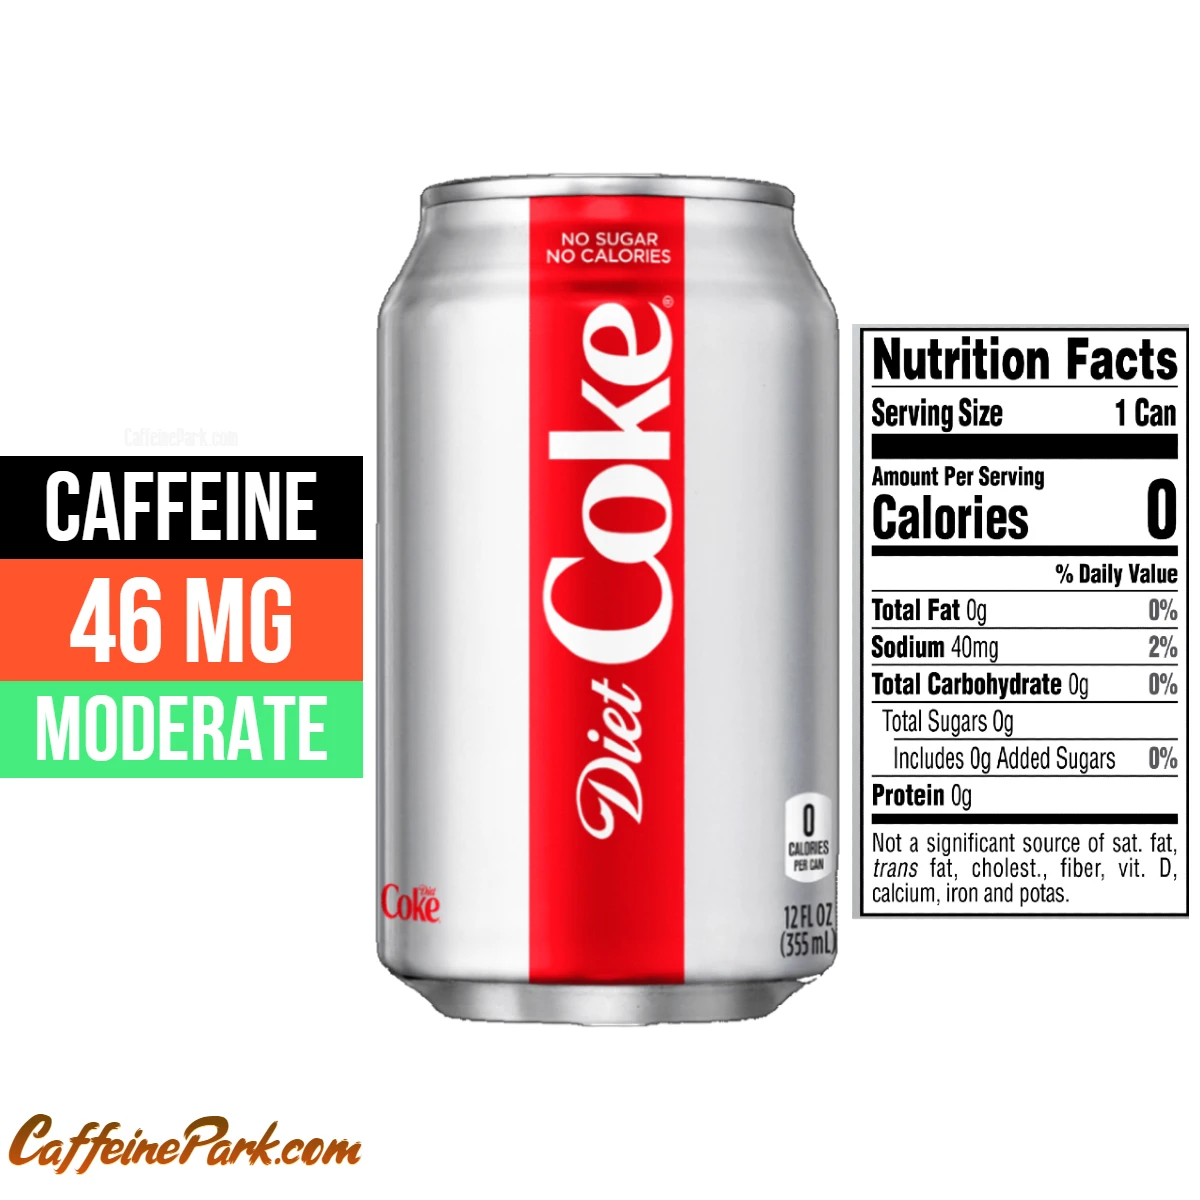 Coke: How Much Caffeine is in it?